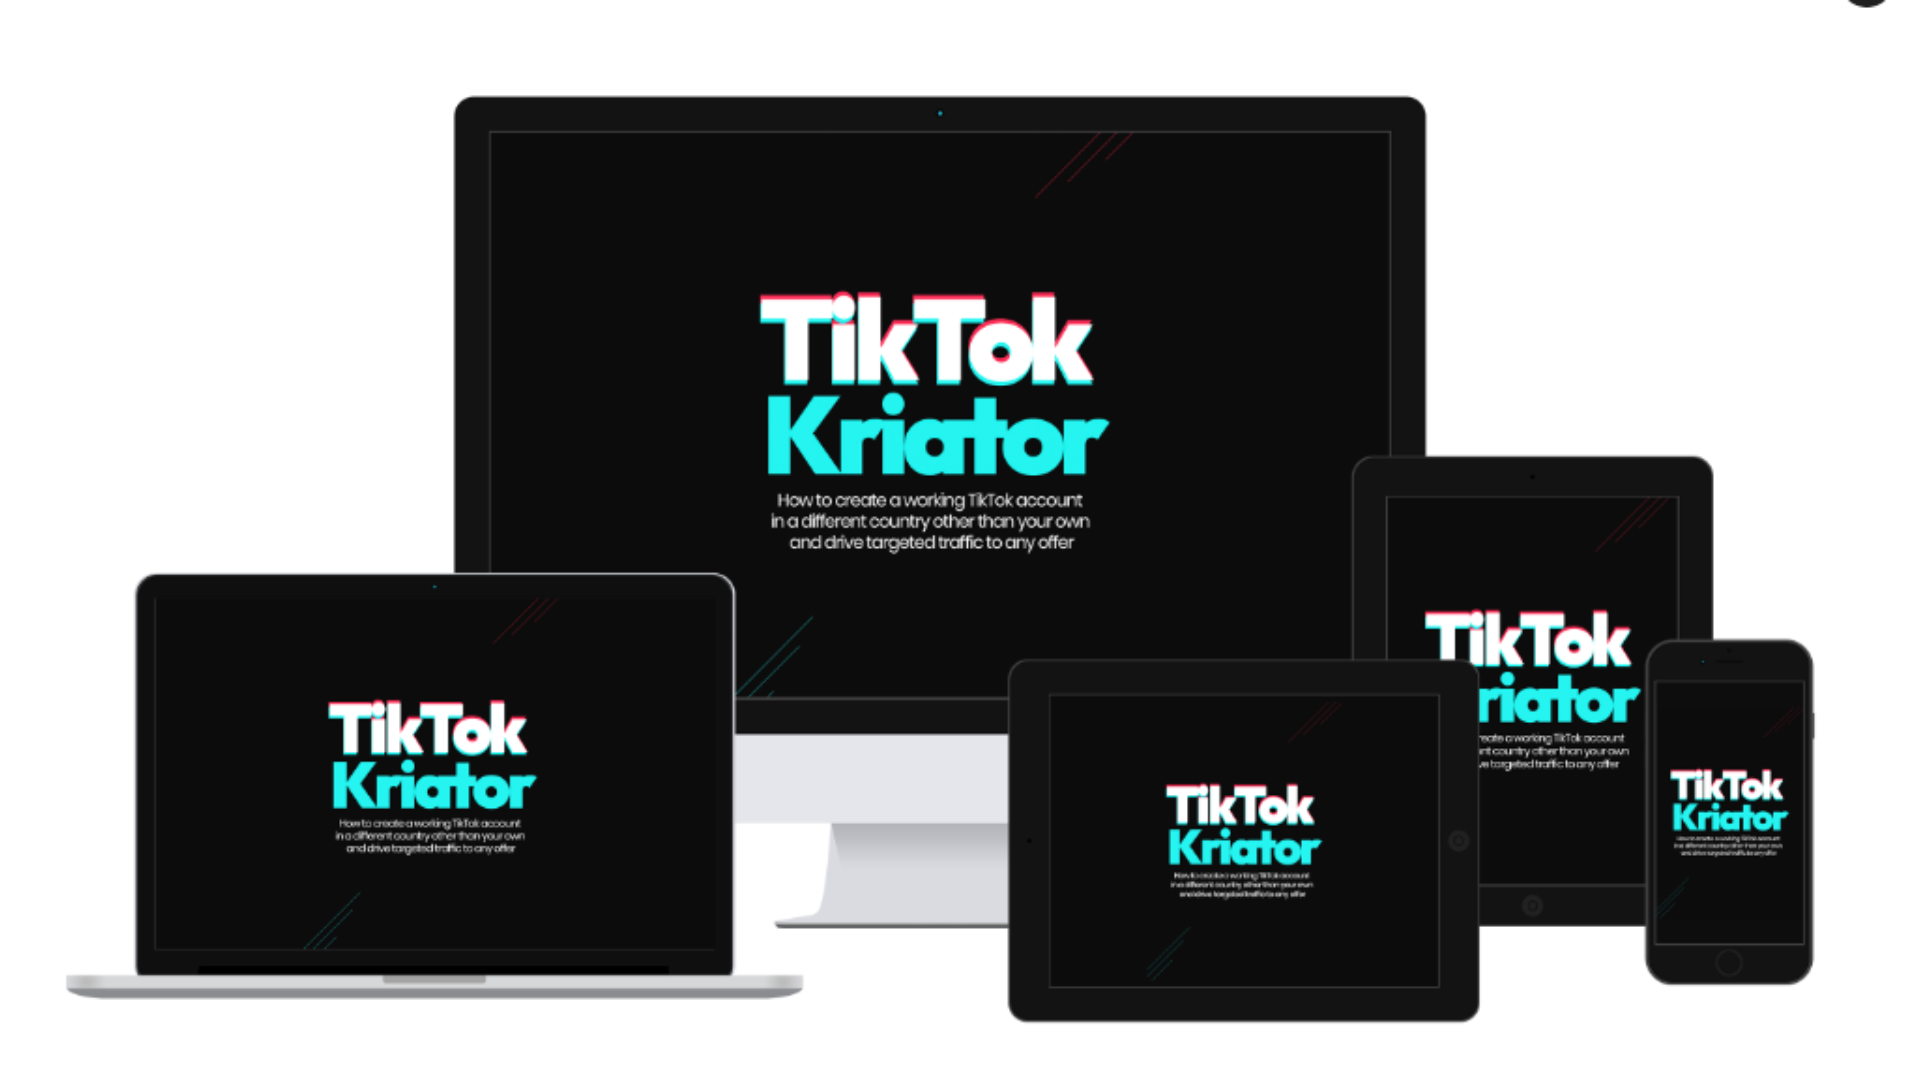 TikTok Kriator Review